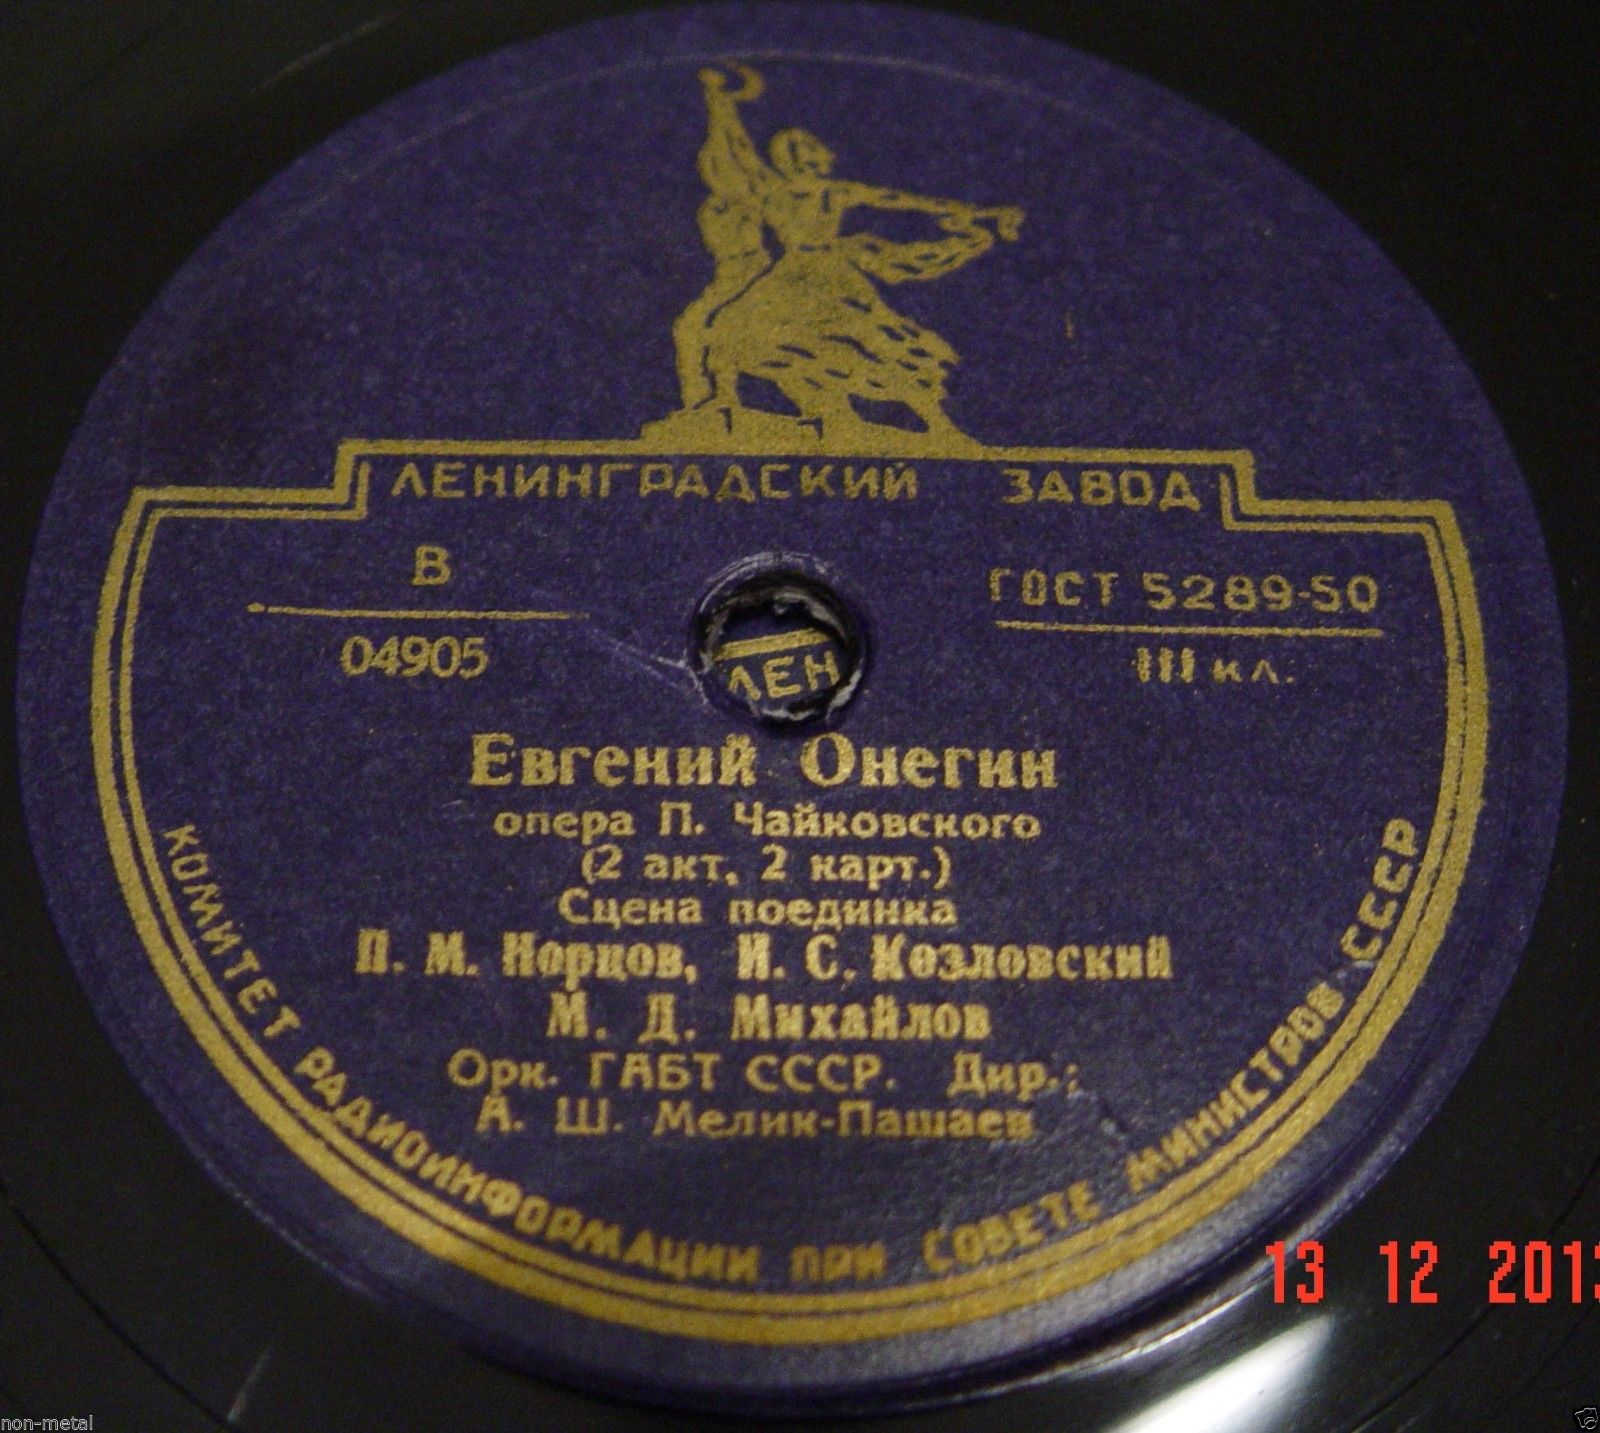 Опера П. Чайковского «Евгений Онегин» в грамзаписи (полностью)